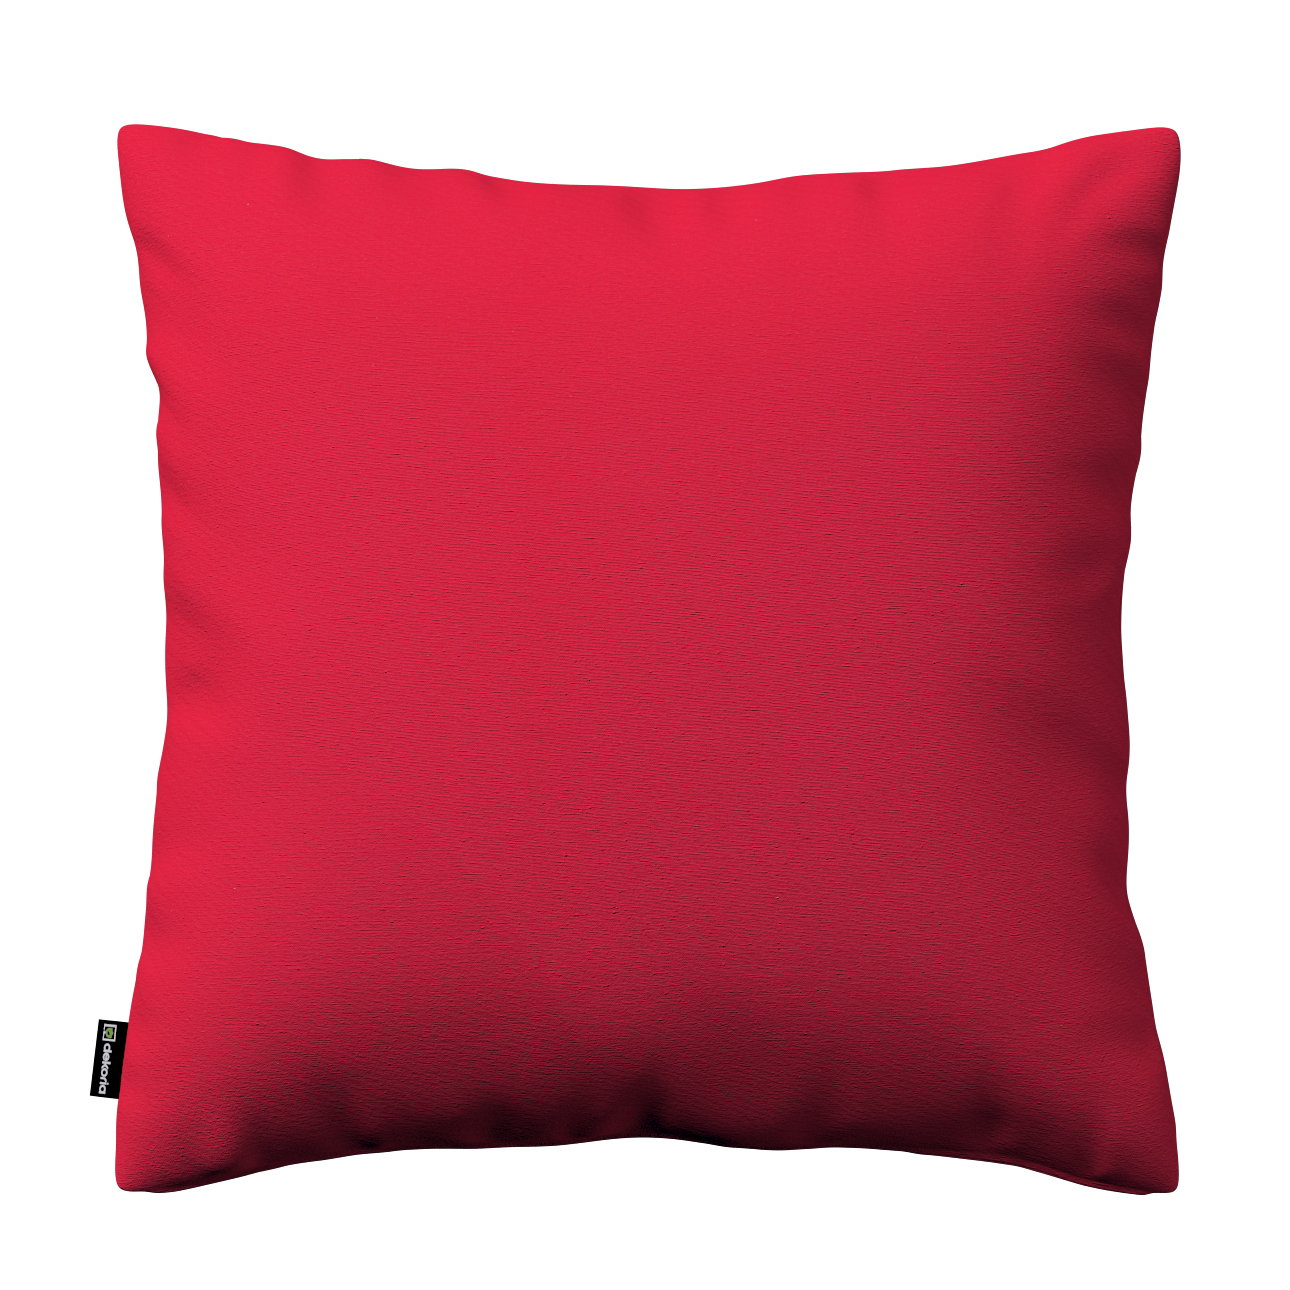 Dekoria Karin - jednoduchá obliečka, červená, 50 x 50 cm, Quadro, 136-19